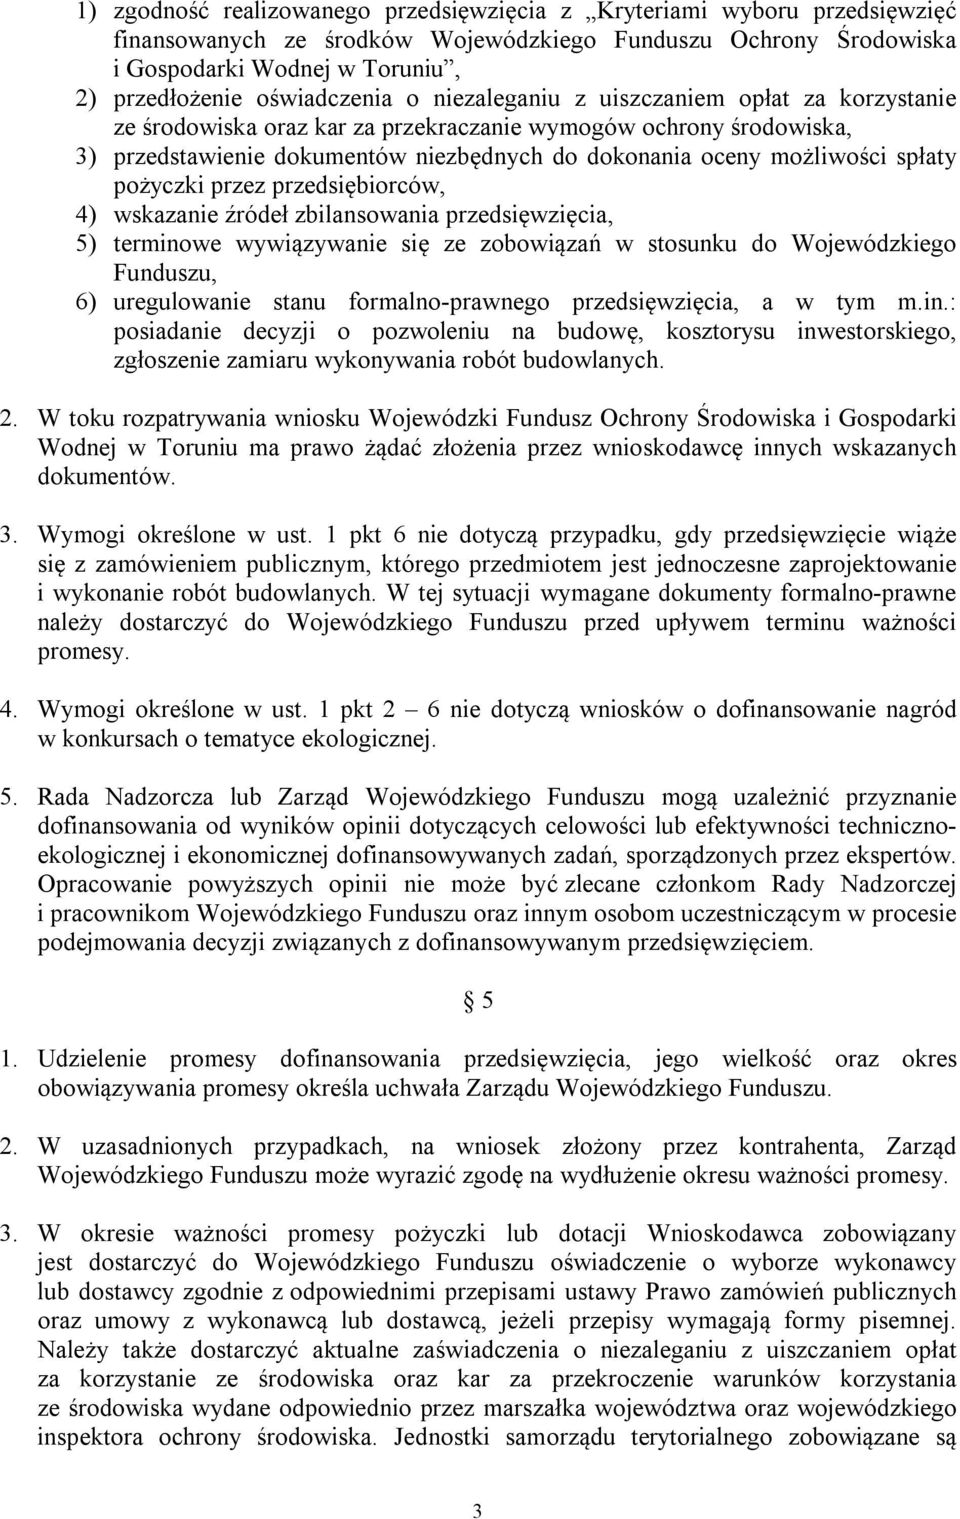 możliwości spłaty pożyczki przez przedsiębiorców, 4) wskazanie źródeł zbilansowania przedsięwzięcia, 5) terminowe wywiązywanie się ze zobowiązań w stosunku do Wojewódzkiego Funduszu, 6) uregulowanie